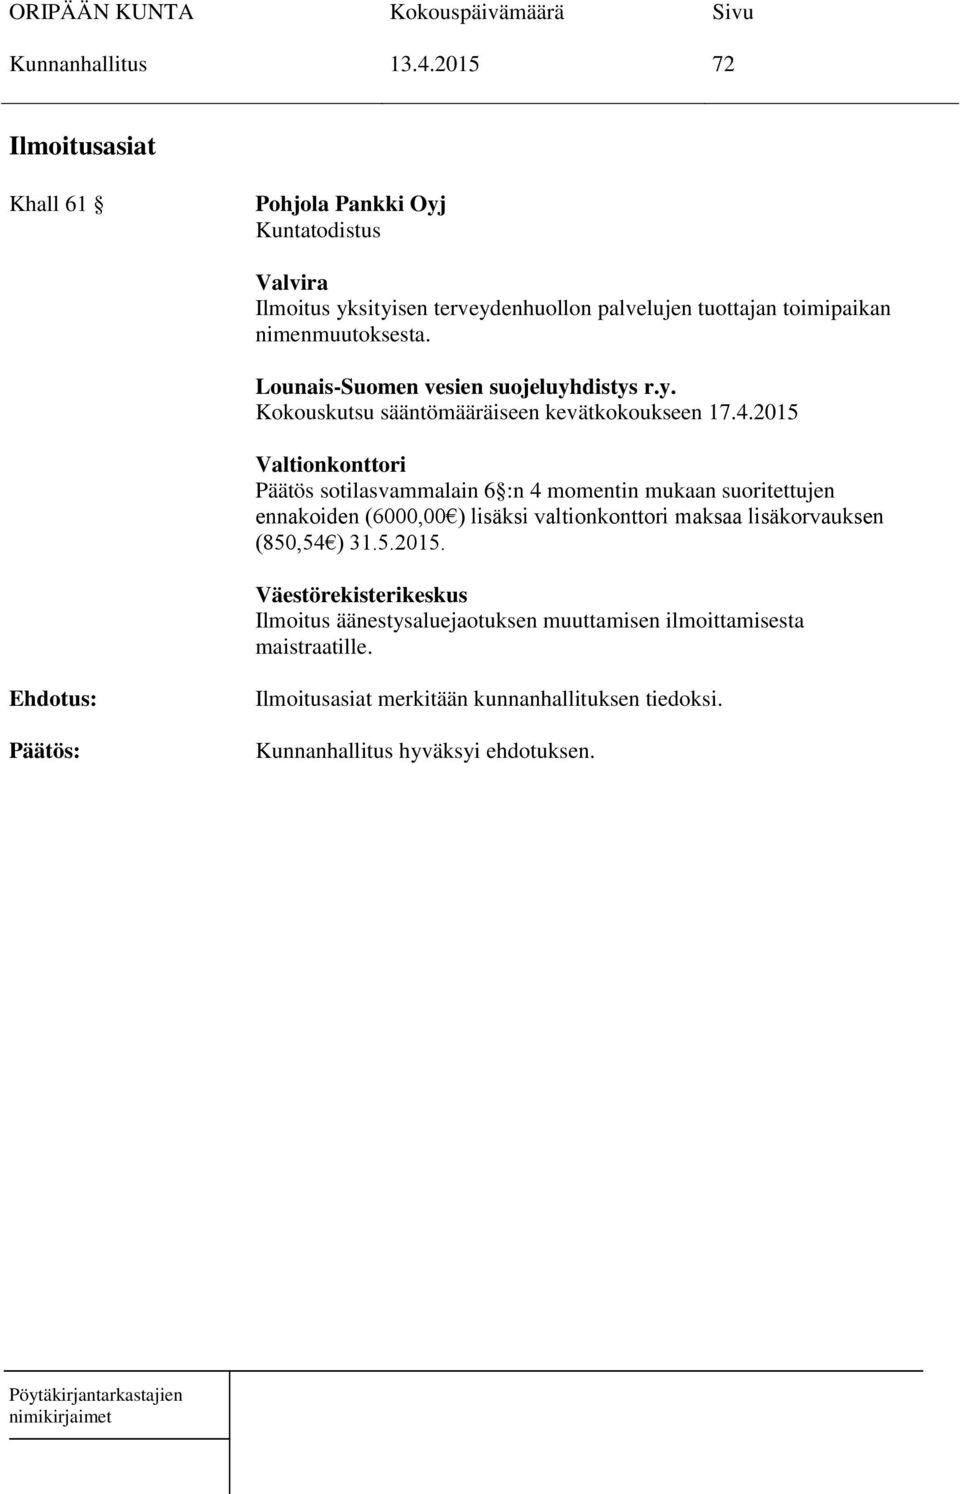 nimenmuutoksesta. Lounais-Suomen vesien suojeluyhdistys r.y. Kokouskutsu sääntömääräiseen kevätkokoukseen 17.4.